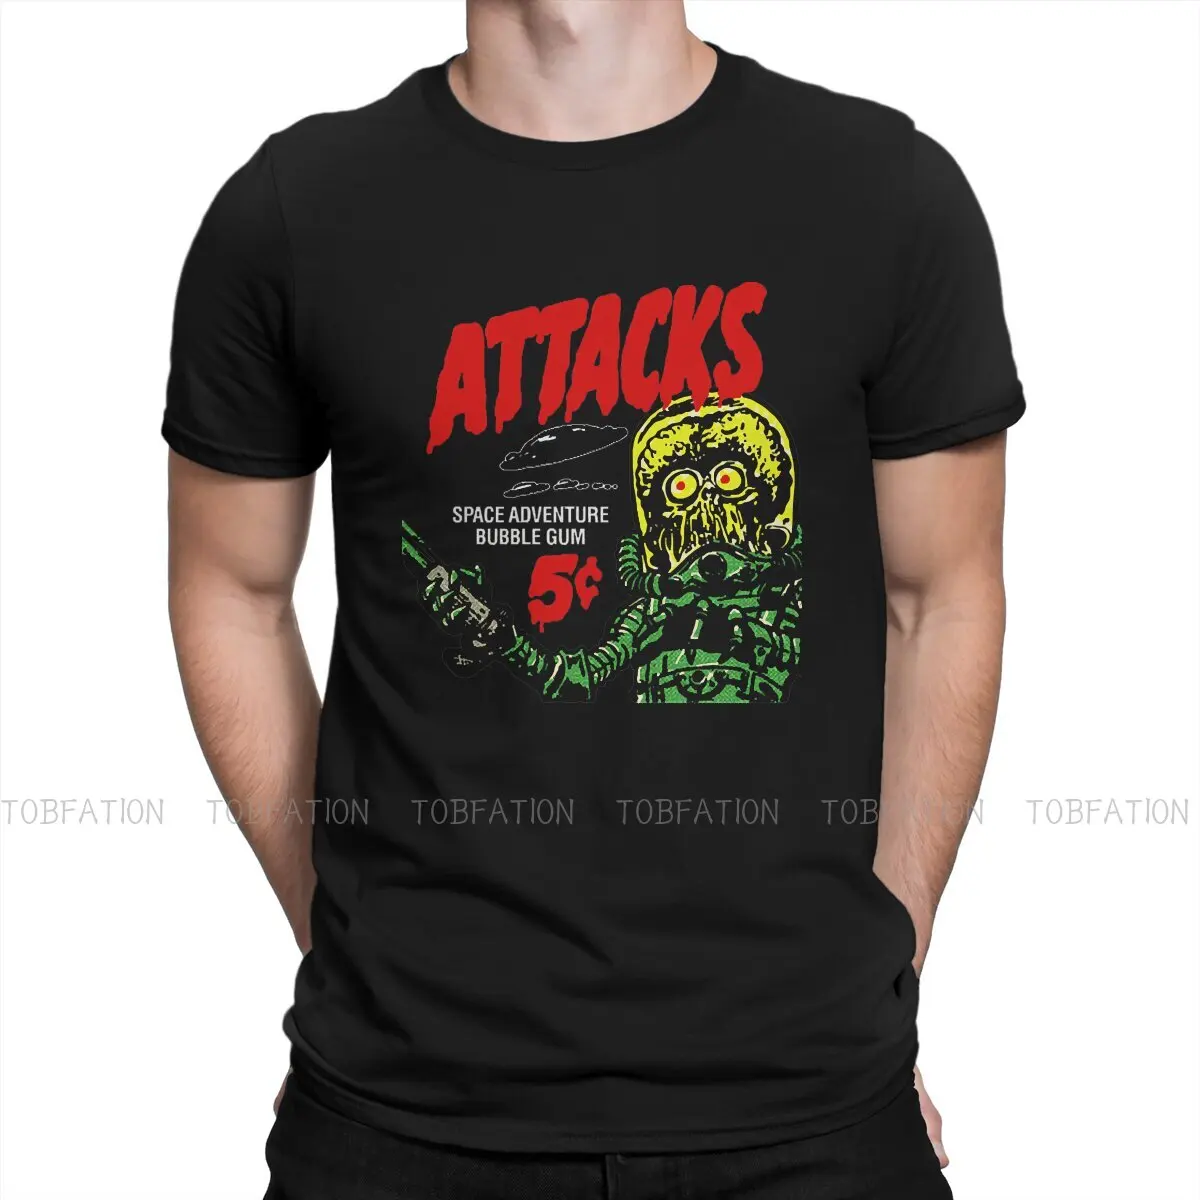 

Mars Attacks Martian Girl Film Original TShirts Bubble Gum Classic Print Homme T Shirt Funny Tops 6XL